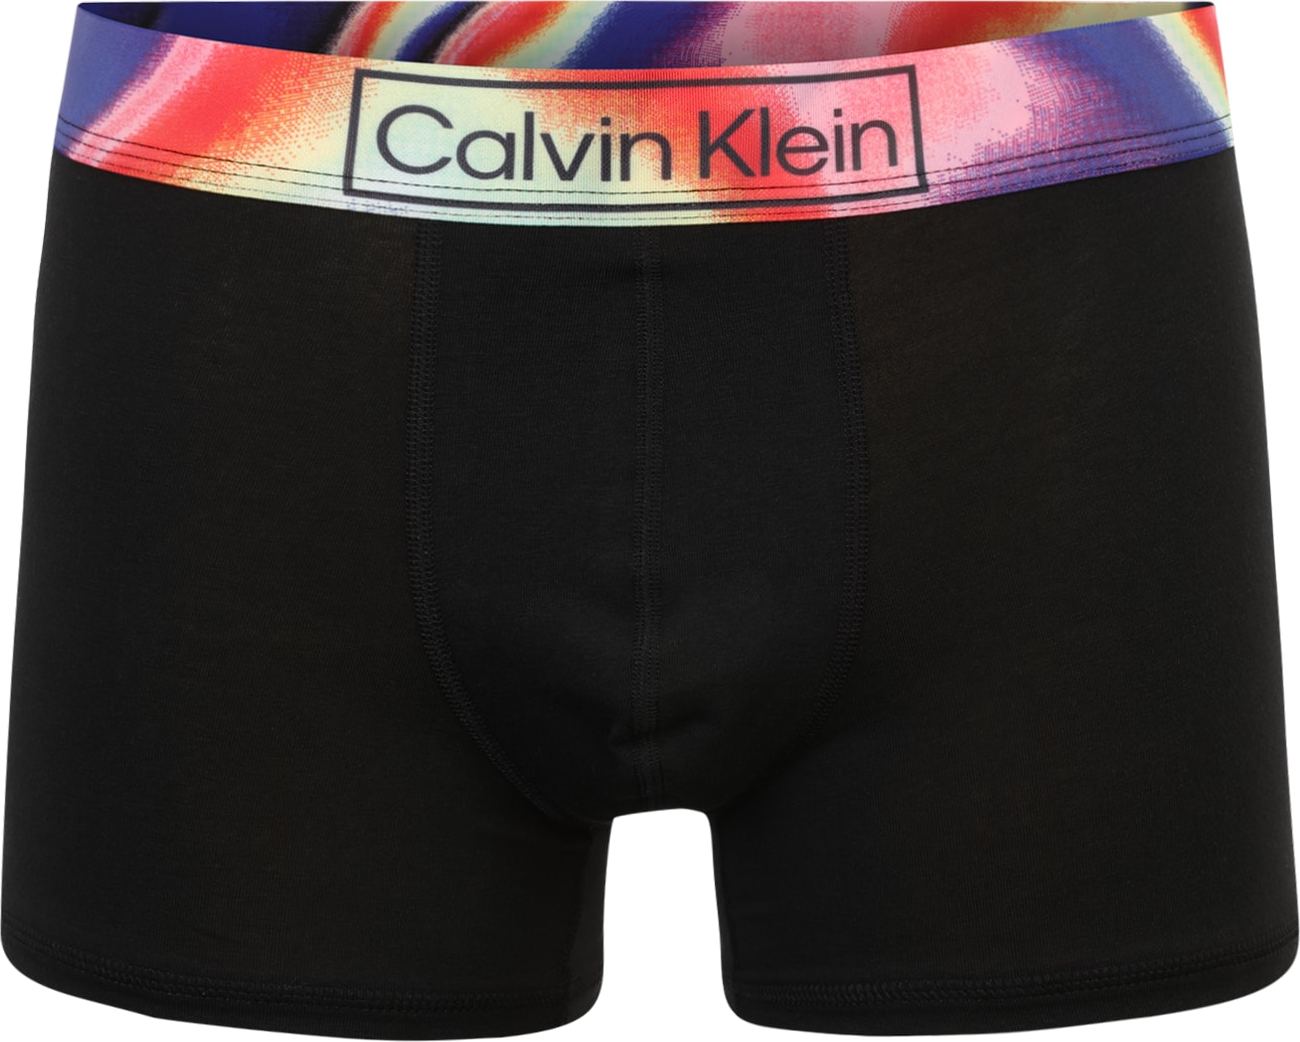 Calvin Klein Underwear Boxerky mátová / tmavě fialová / světle růžová / oranžově červená / černá